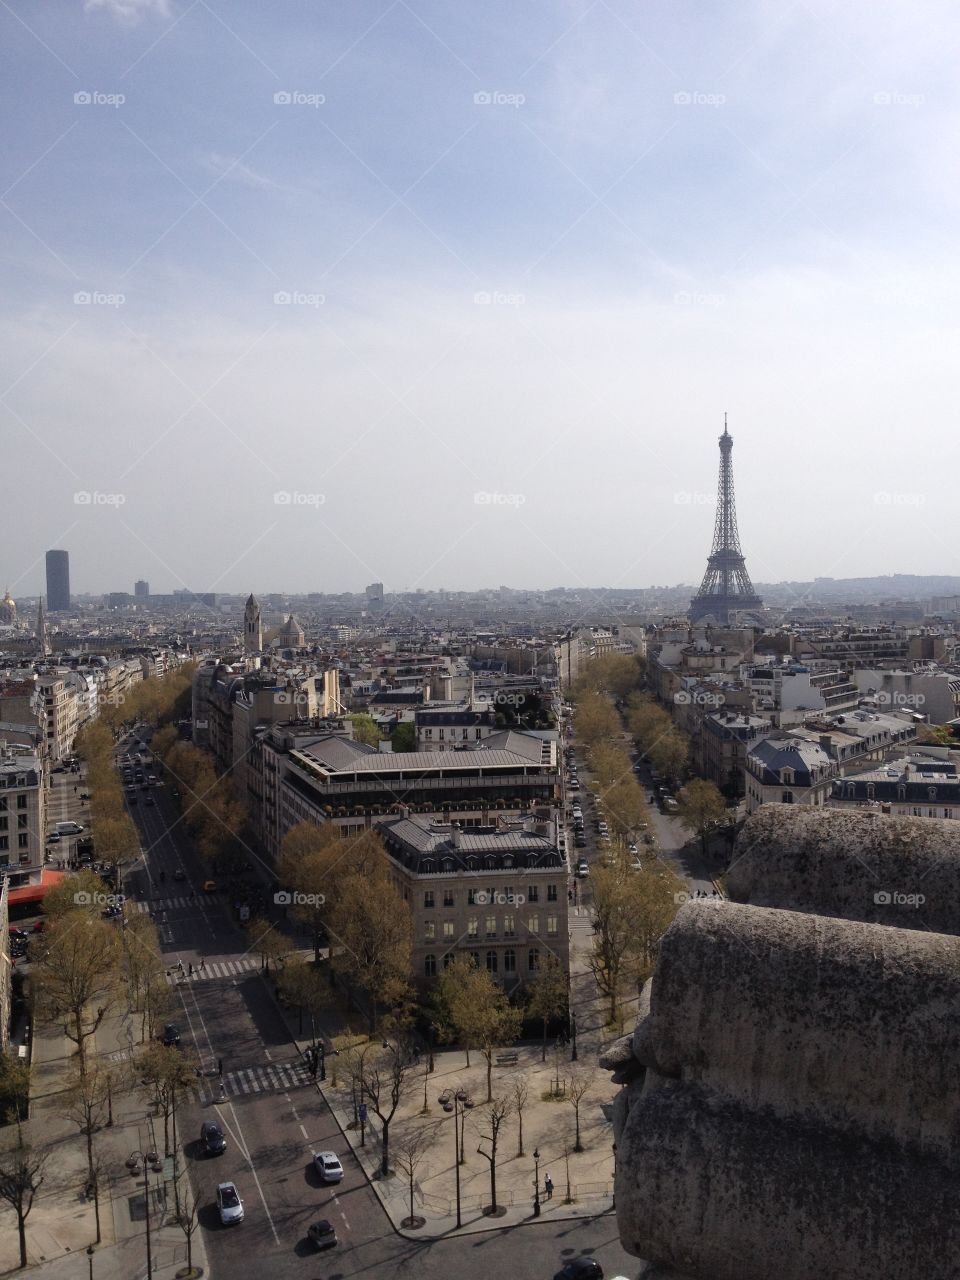 On Top of Paris